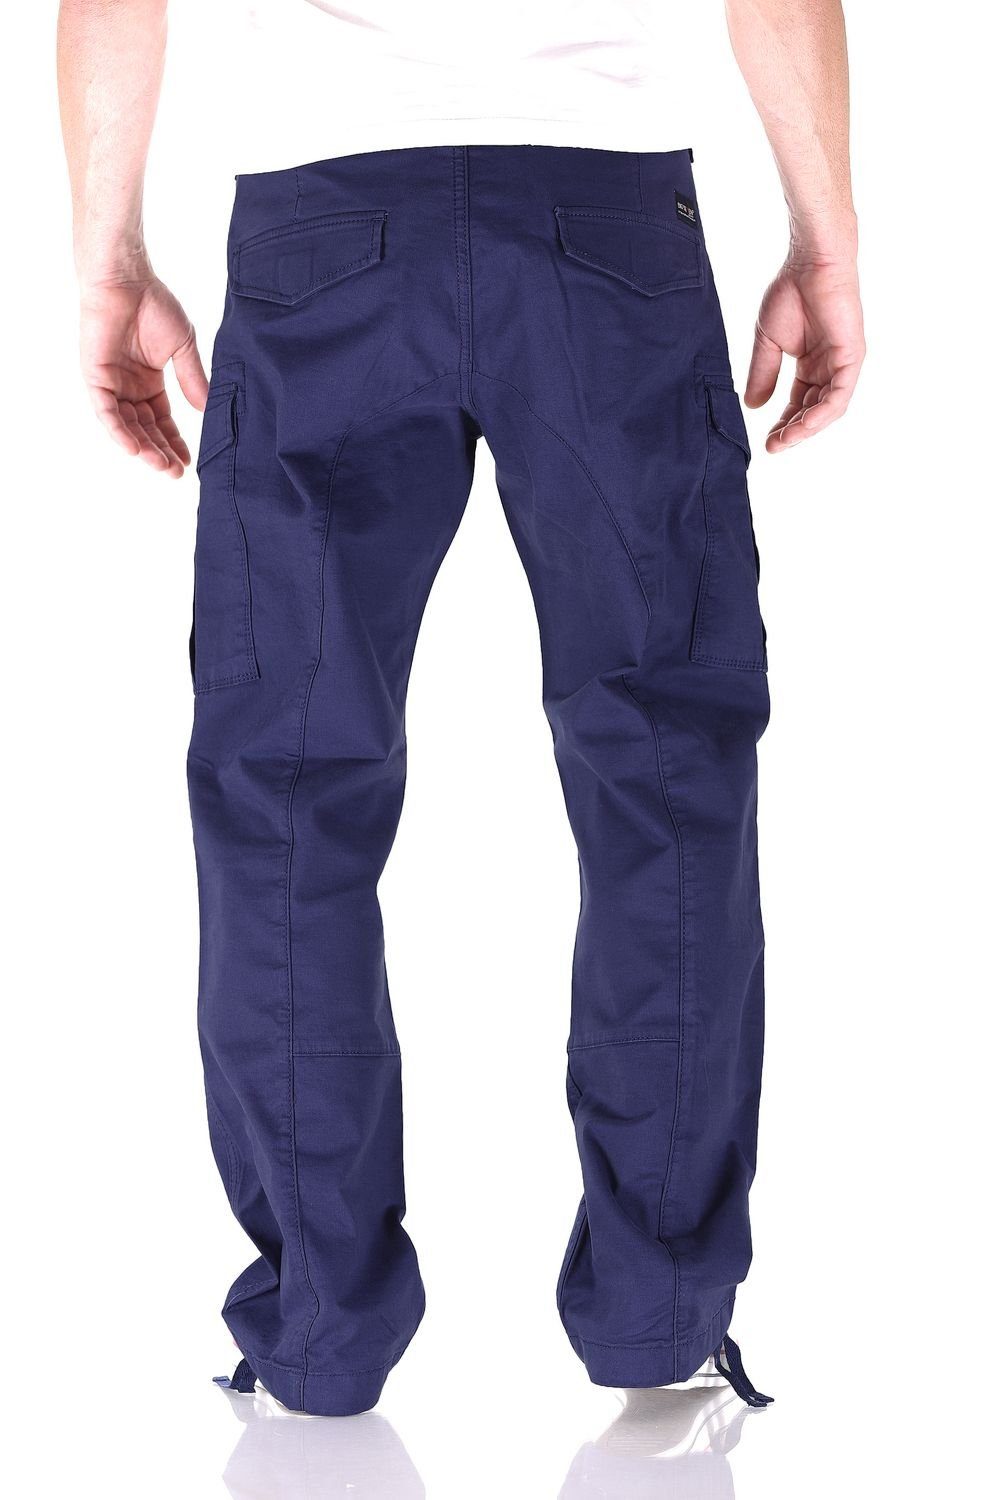 Jeans Seven Hose Seven (Navy Big Blue) Brian Fit Herren Cargojeans Big Blau Comfort Hose Cargo